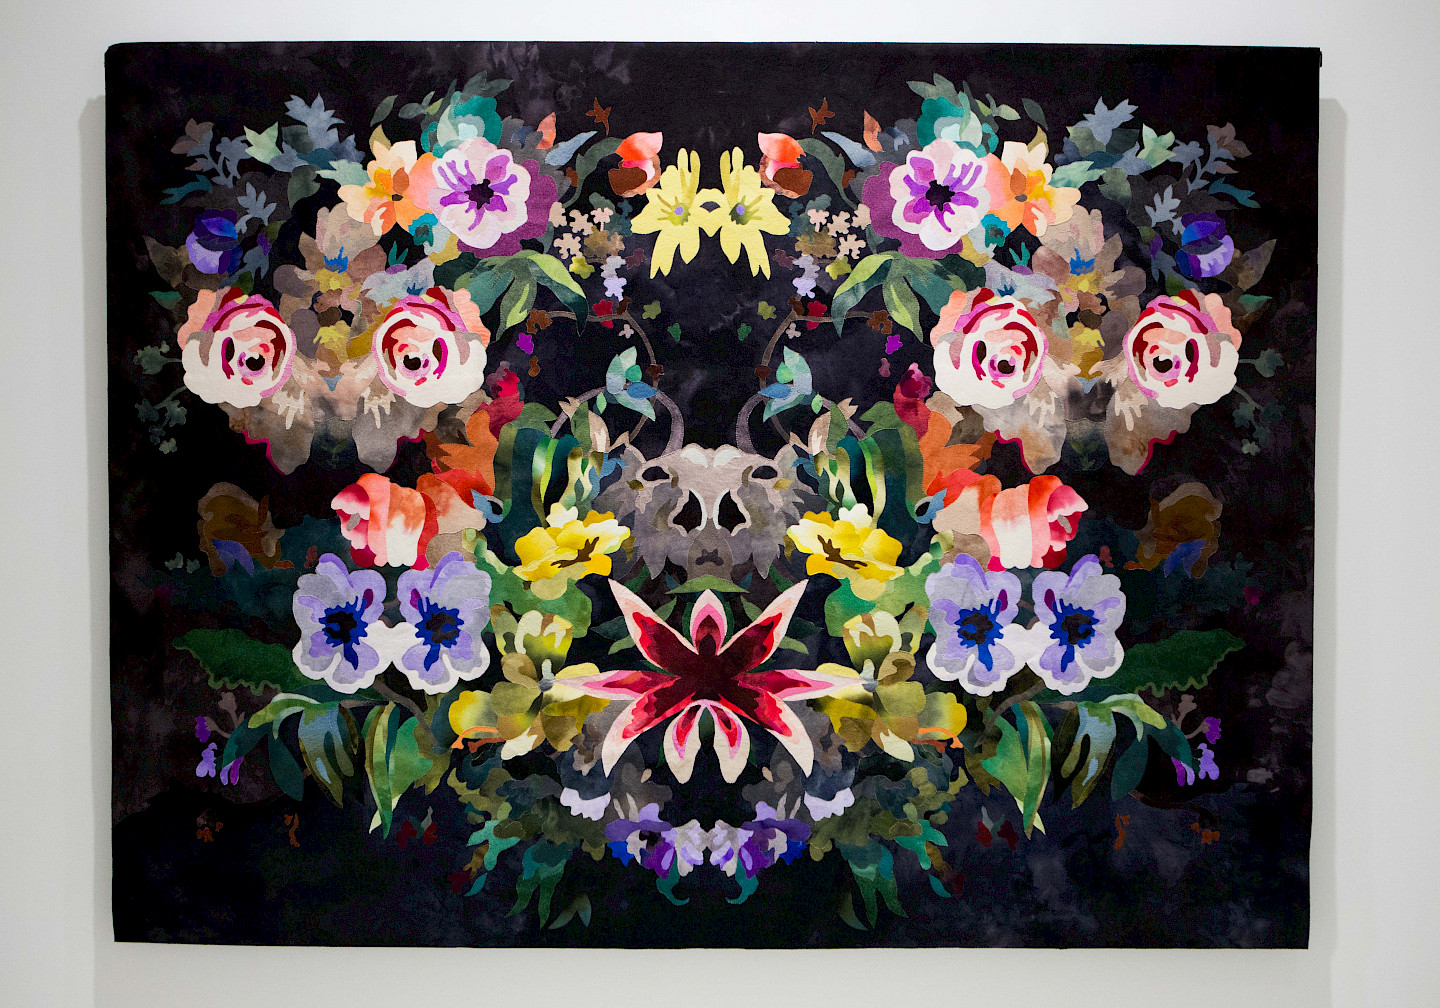 Inger Johanne Rasmussen, "NOE", 2018, textile work for the wall